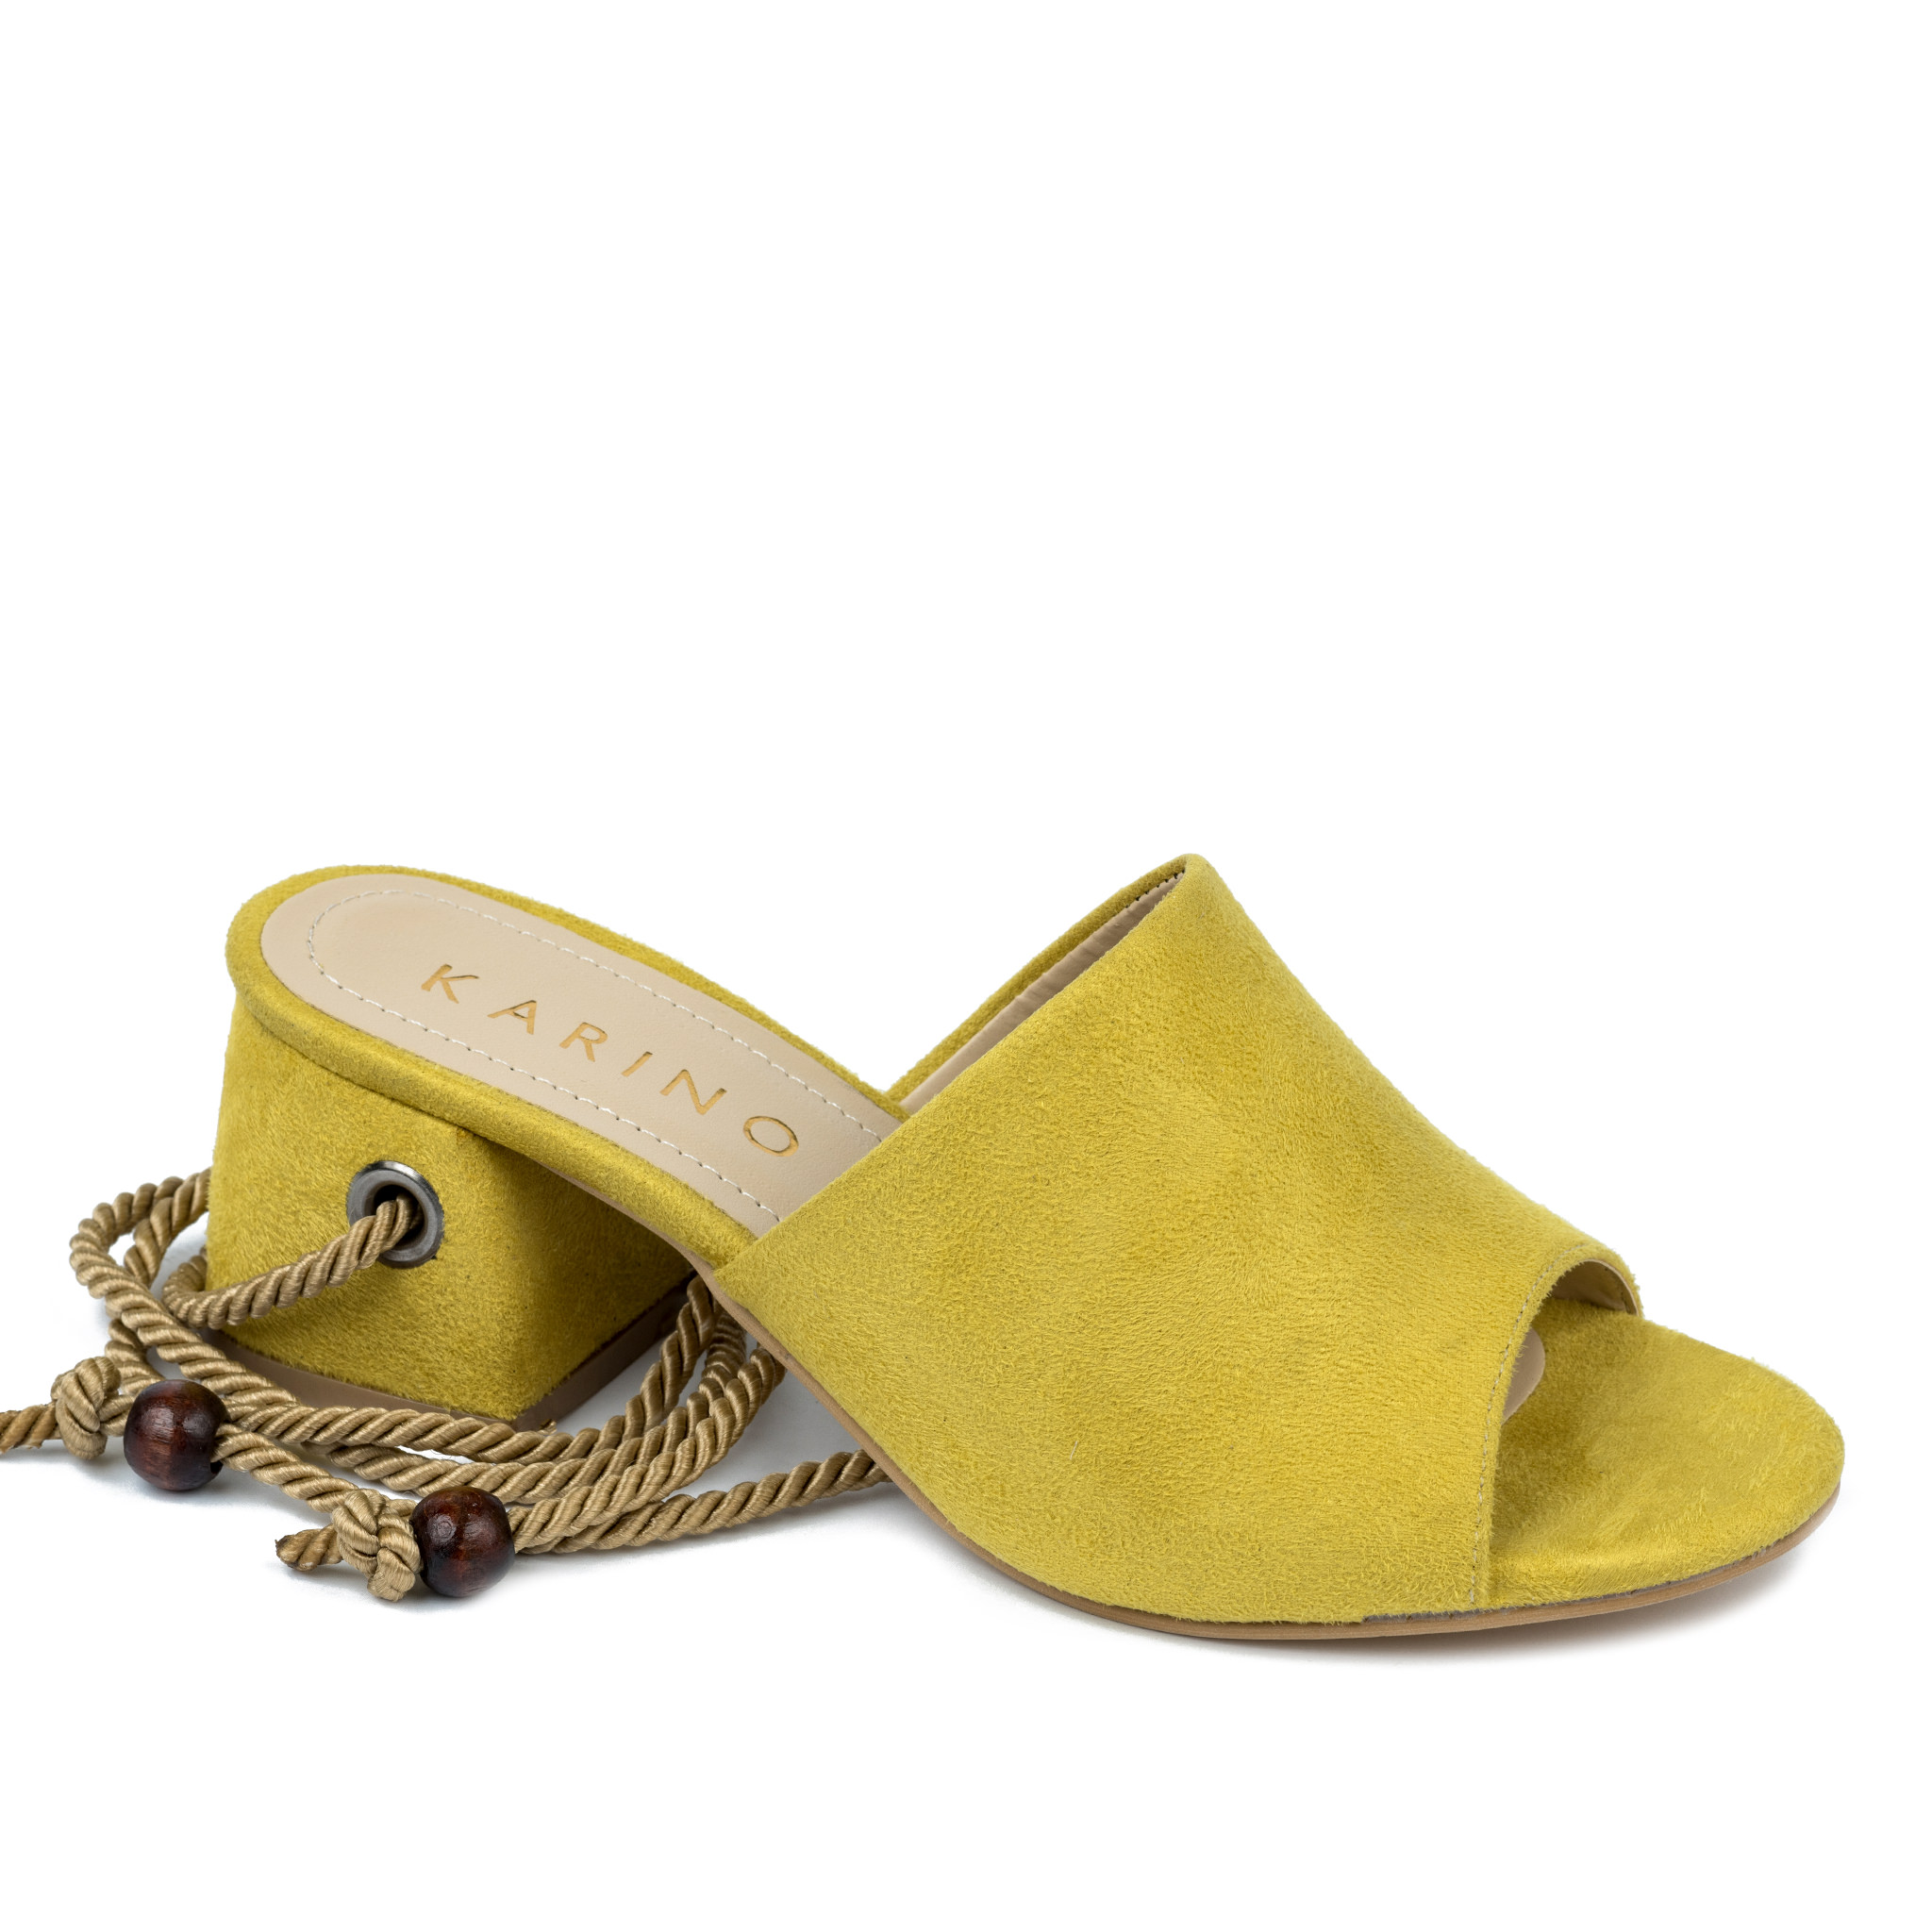 Women sandals A455 - YELLOW